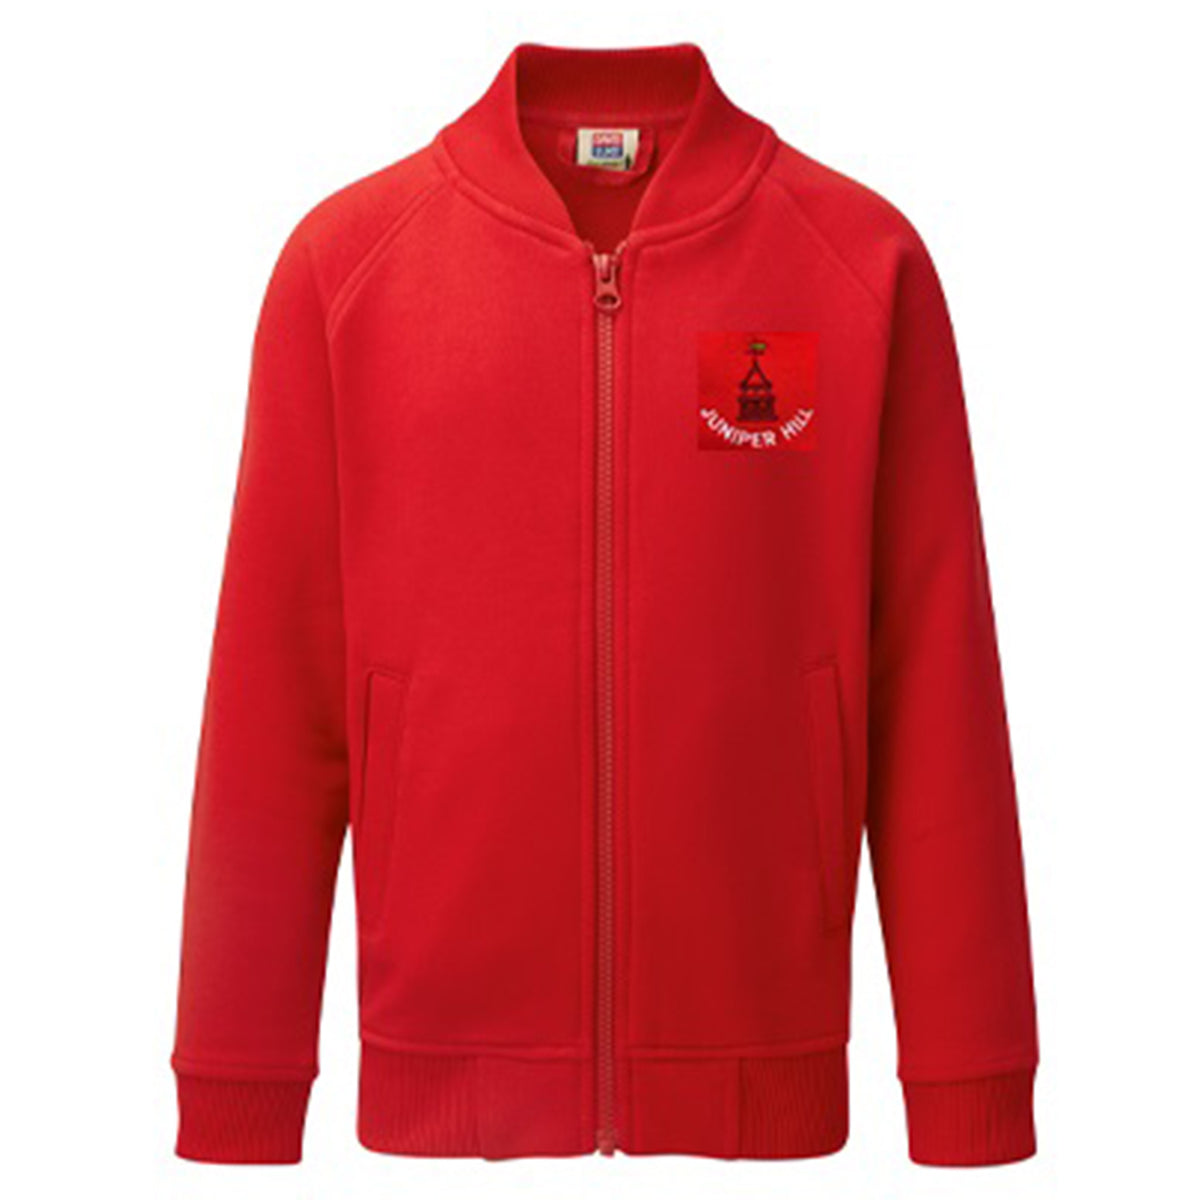 Juniper Hill School Jacket: Red